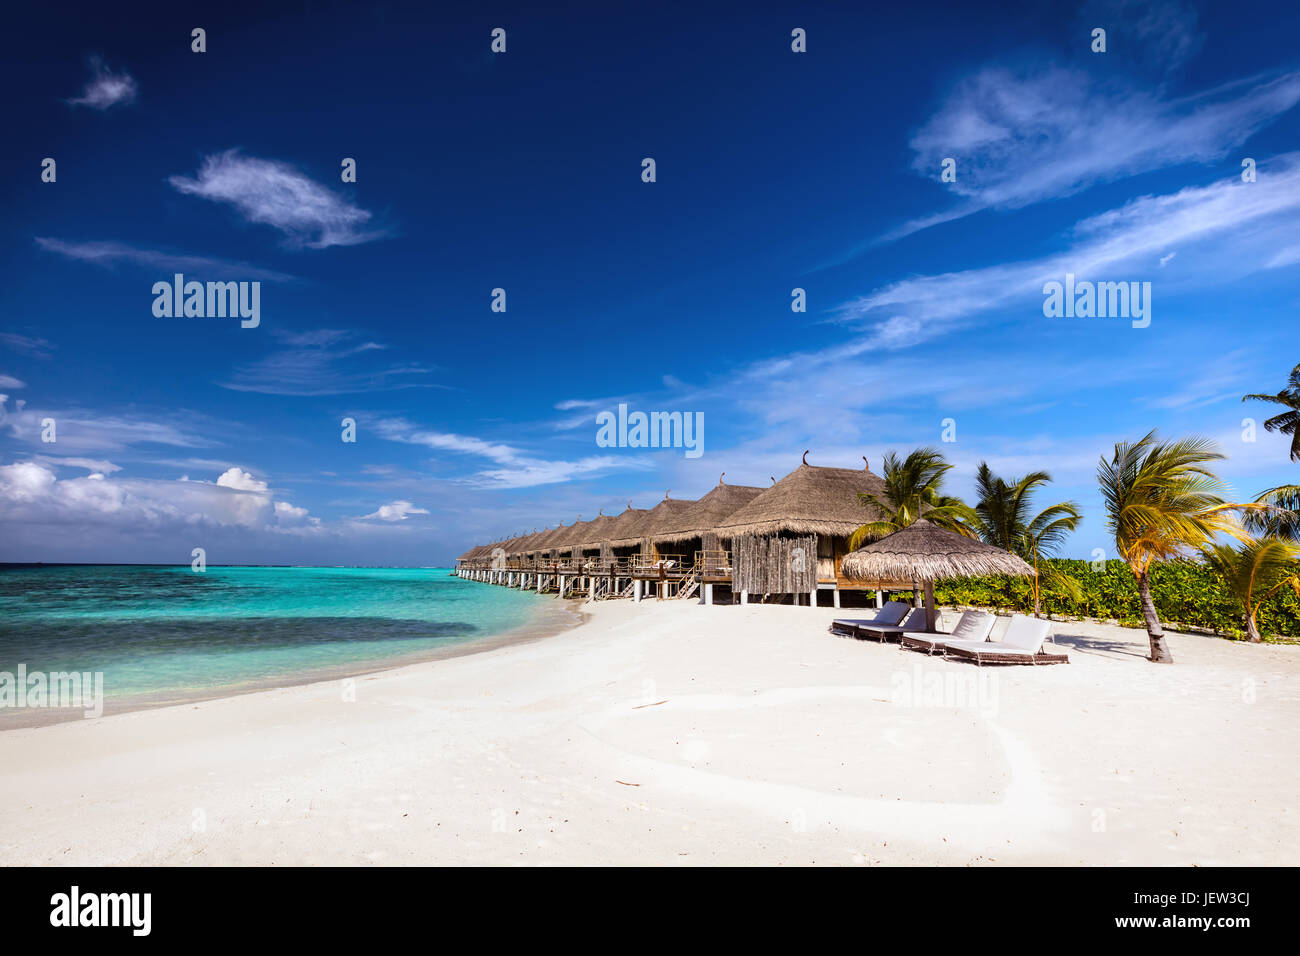 Strand und Wasser Villen auf einer kleinen Insel-Resort auf den Malediven, Indischer Ozean. Ferien-destination Stockfoto